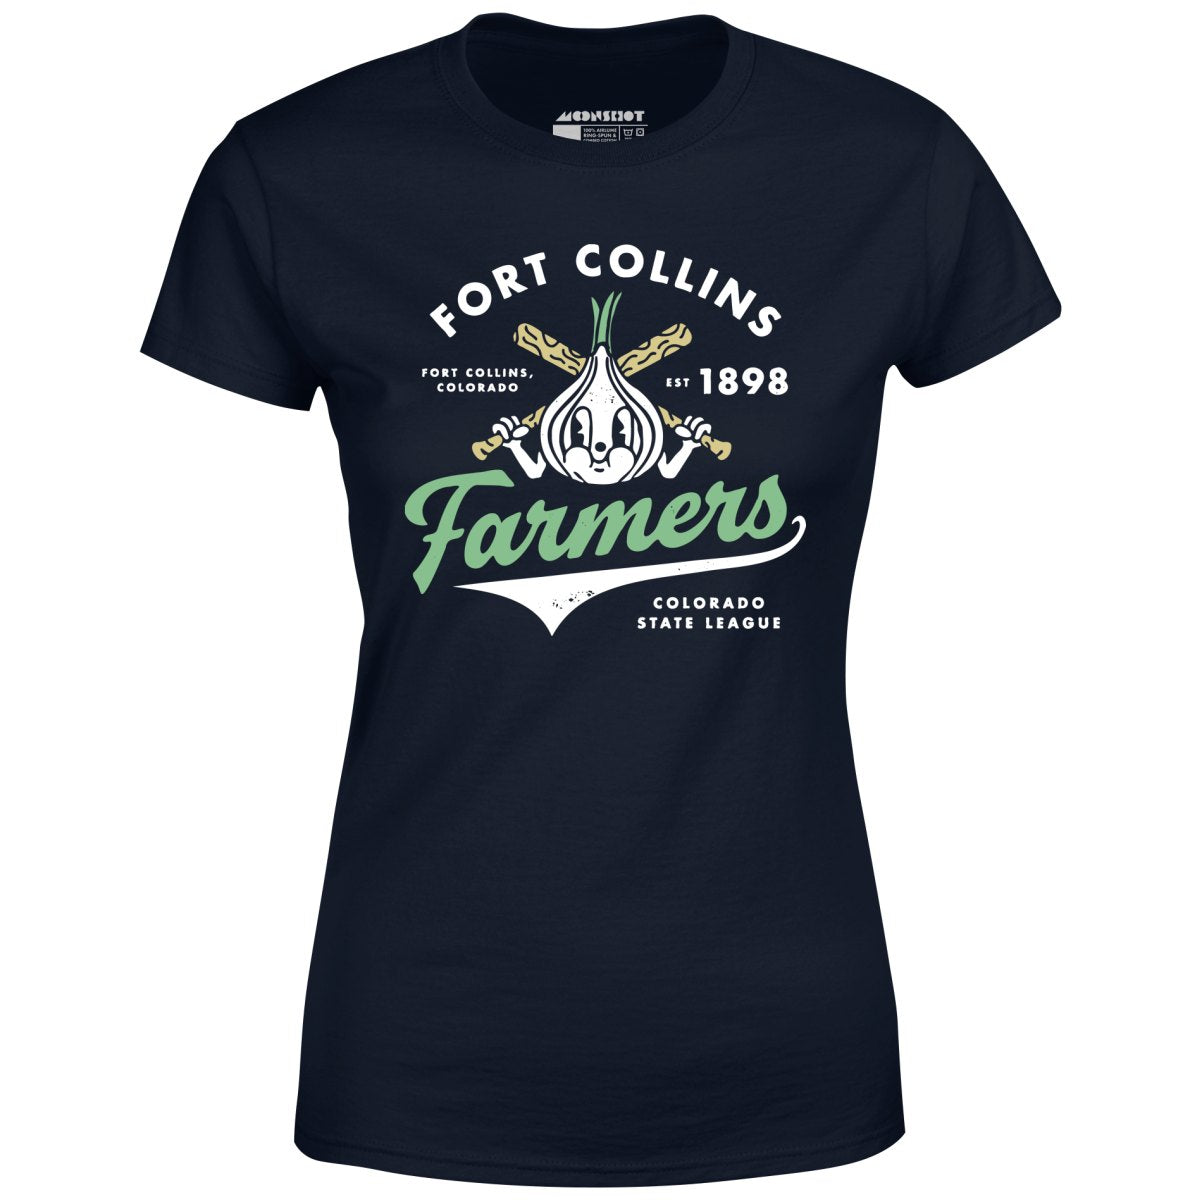 Fort Collins Farmers - Colorado - Vintage Defunct Baseball Teams - Women's T-Shirt